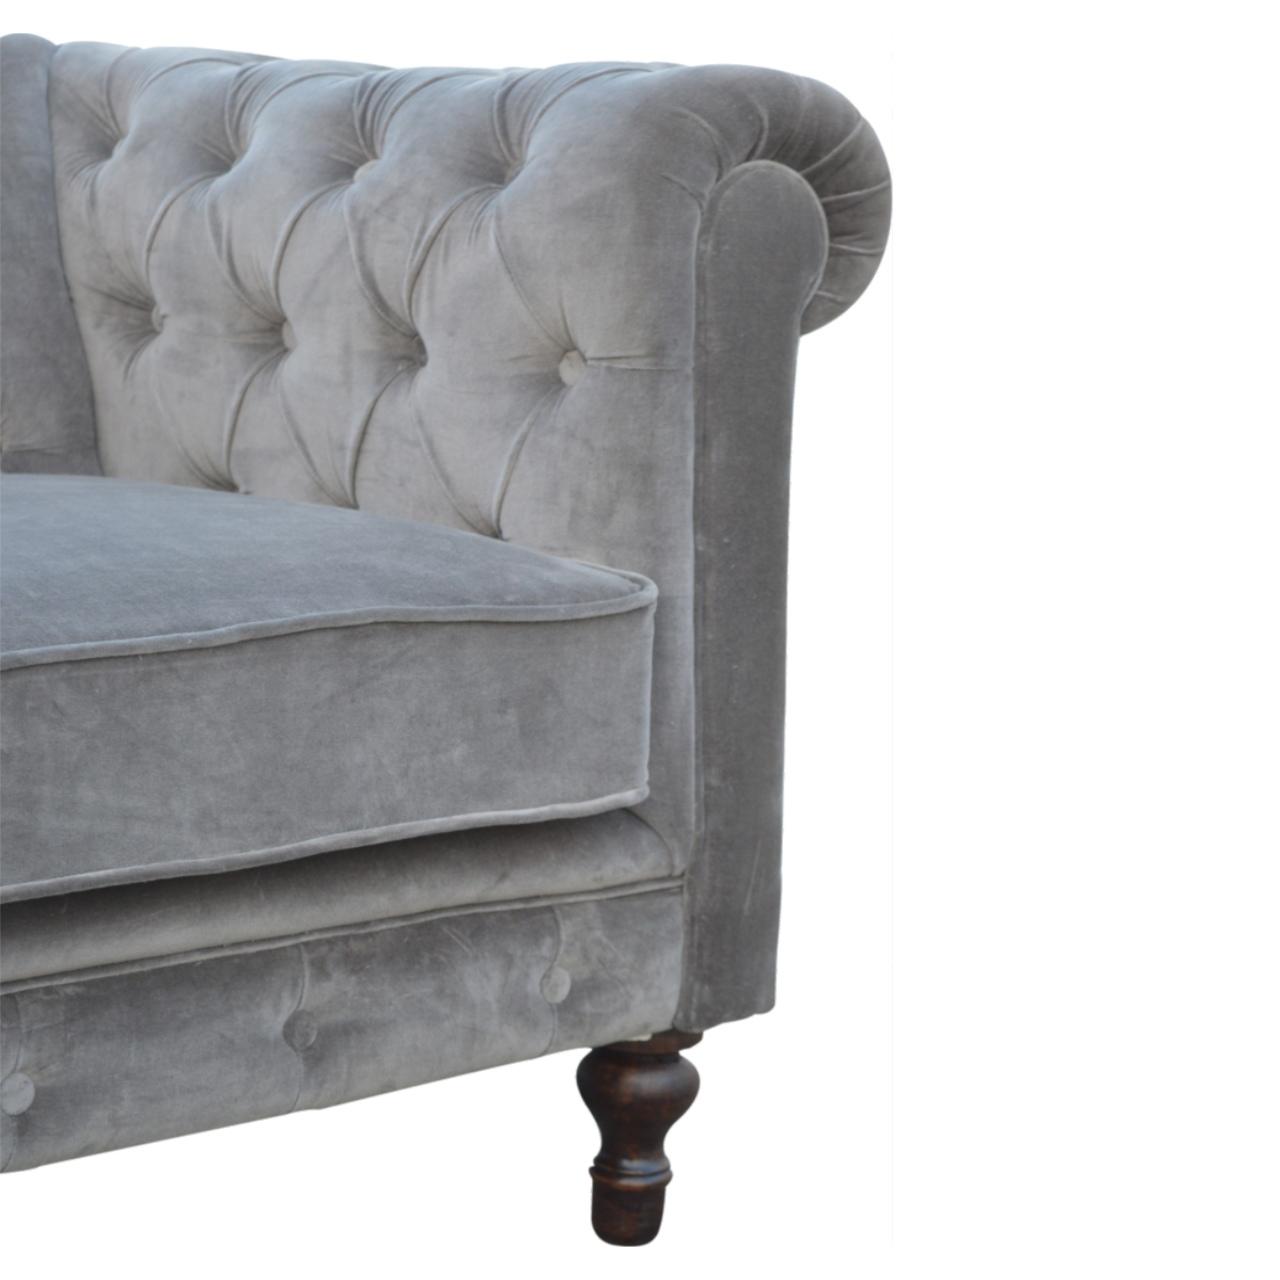 Grey Velvet 2 Seater Chesterfield Sofa